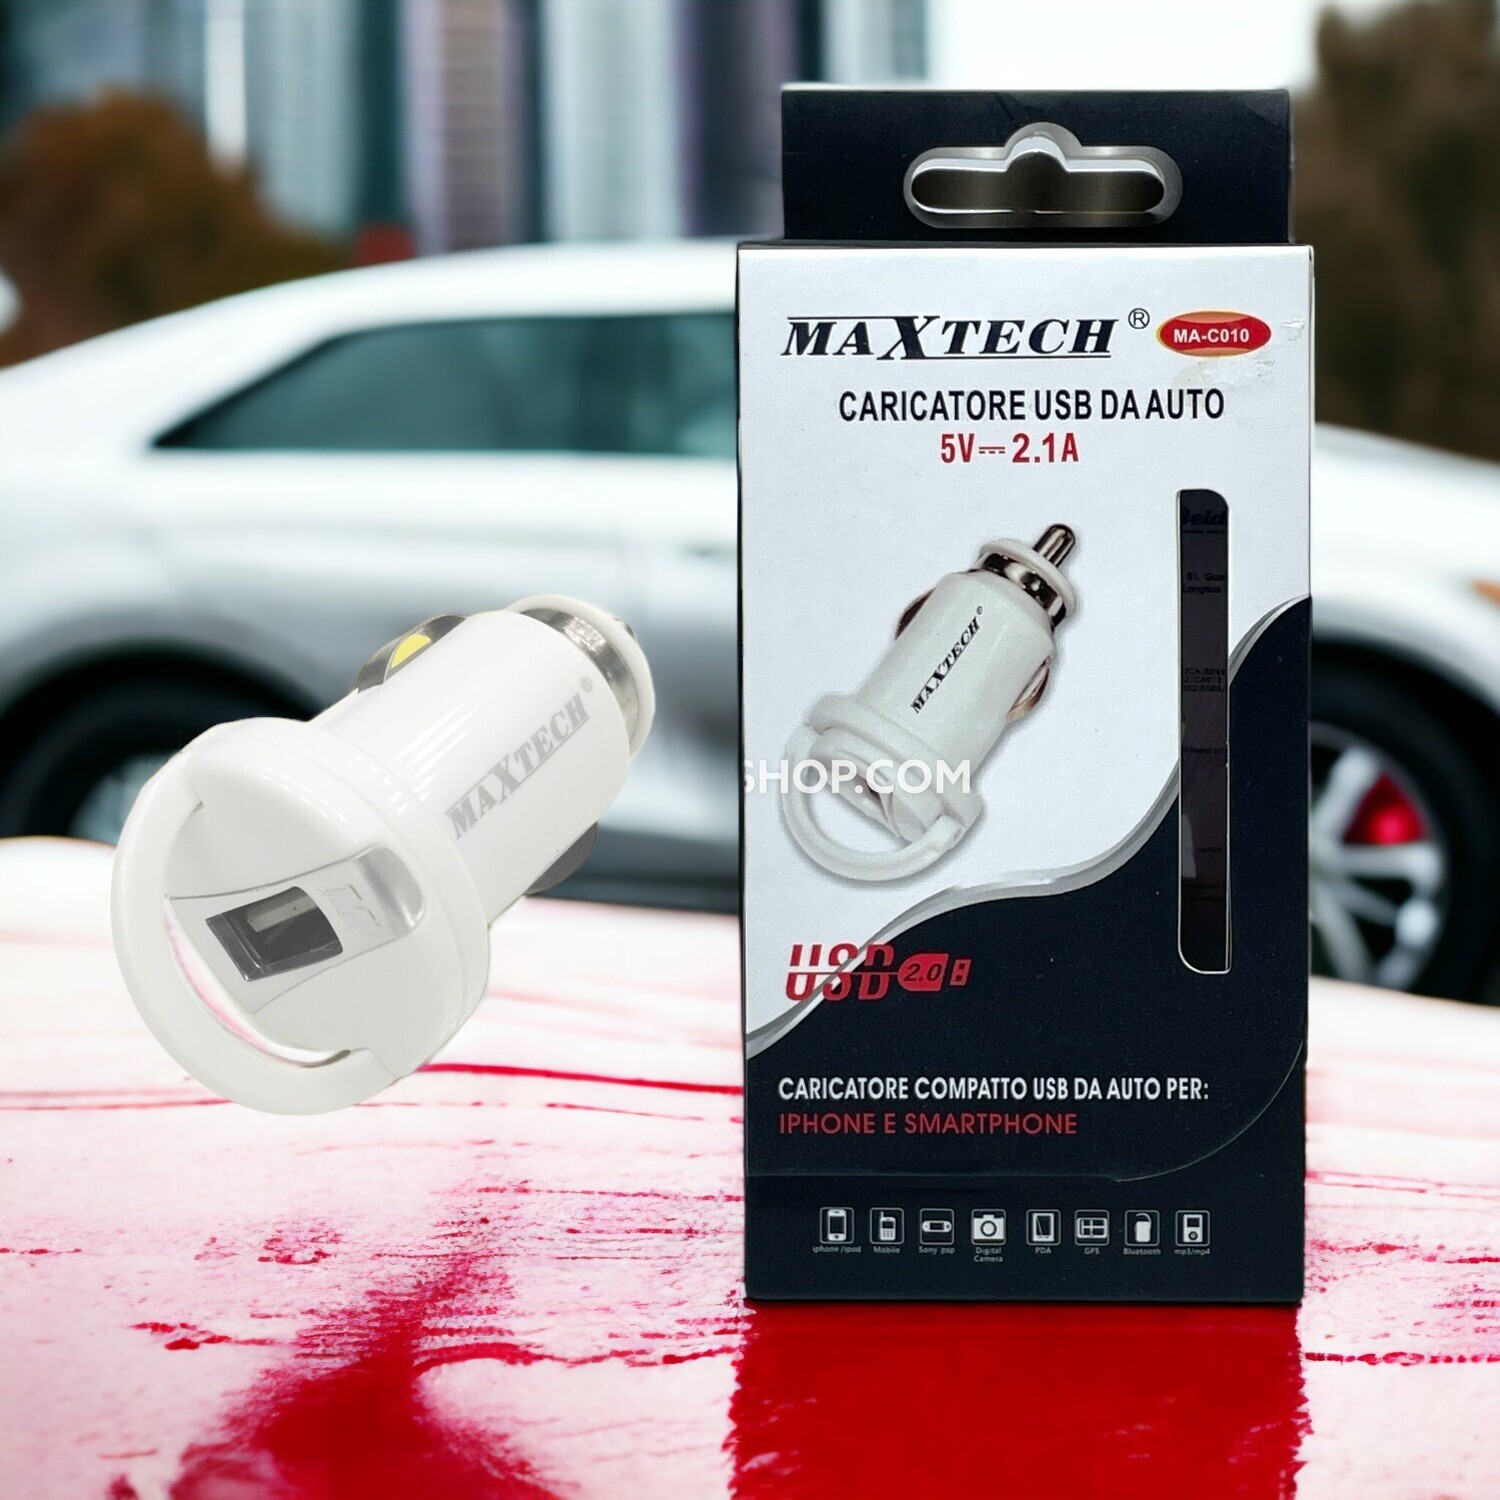 Caricatore USB da Auto Maxtech MA-C010: Ricarica Veloce e Sicura per Tutti i Tuoi Dispositivi.